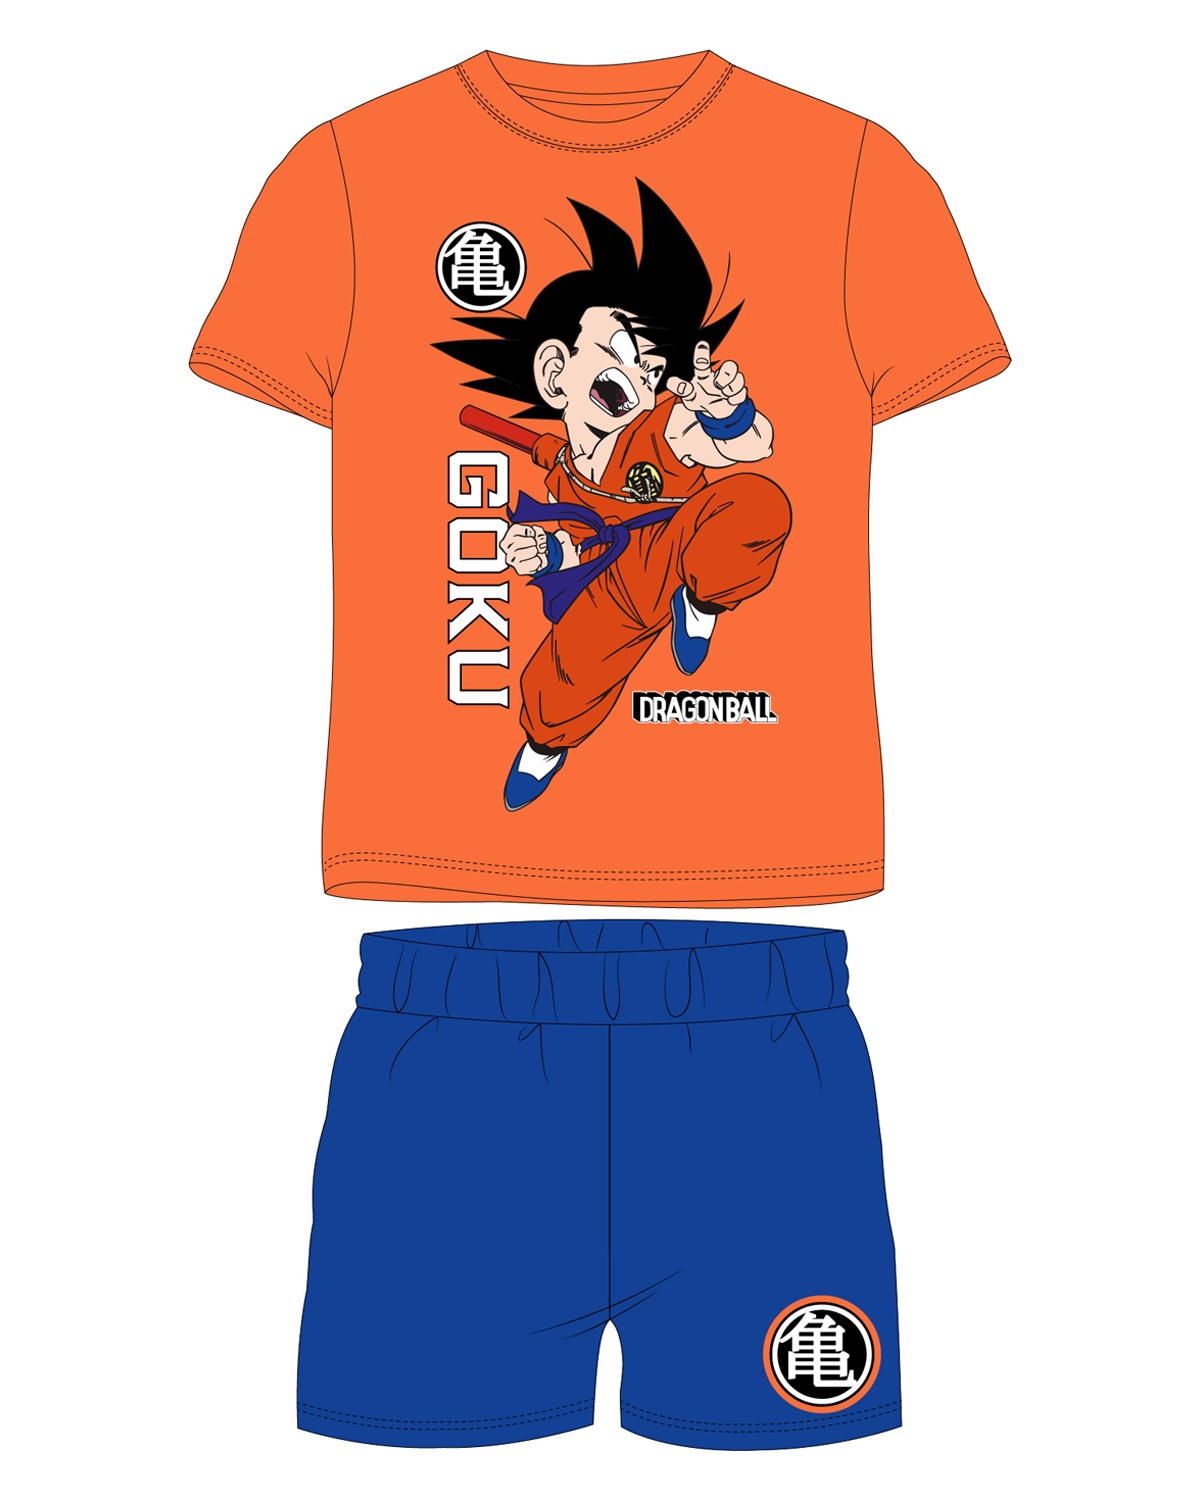 Dragon Ball - licence Chlapecké pyžamo - Dragon Ball 5204072, oranžová / modrá Barva: Oranžová, Velikost: 134